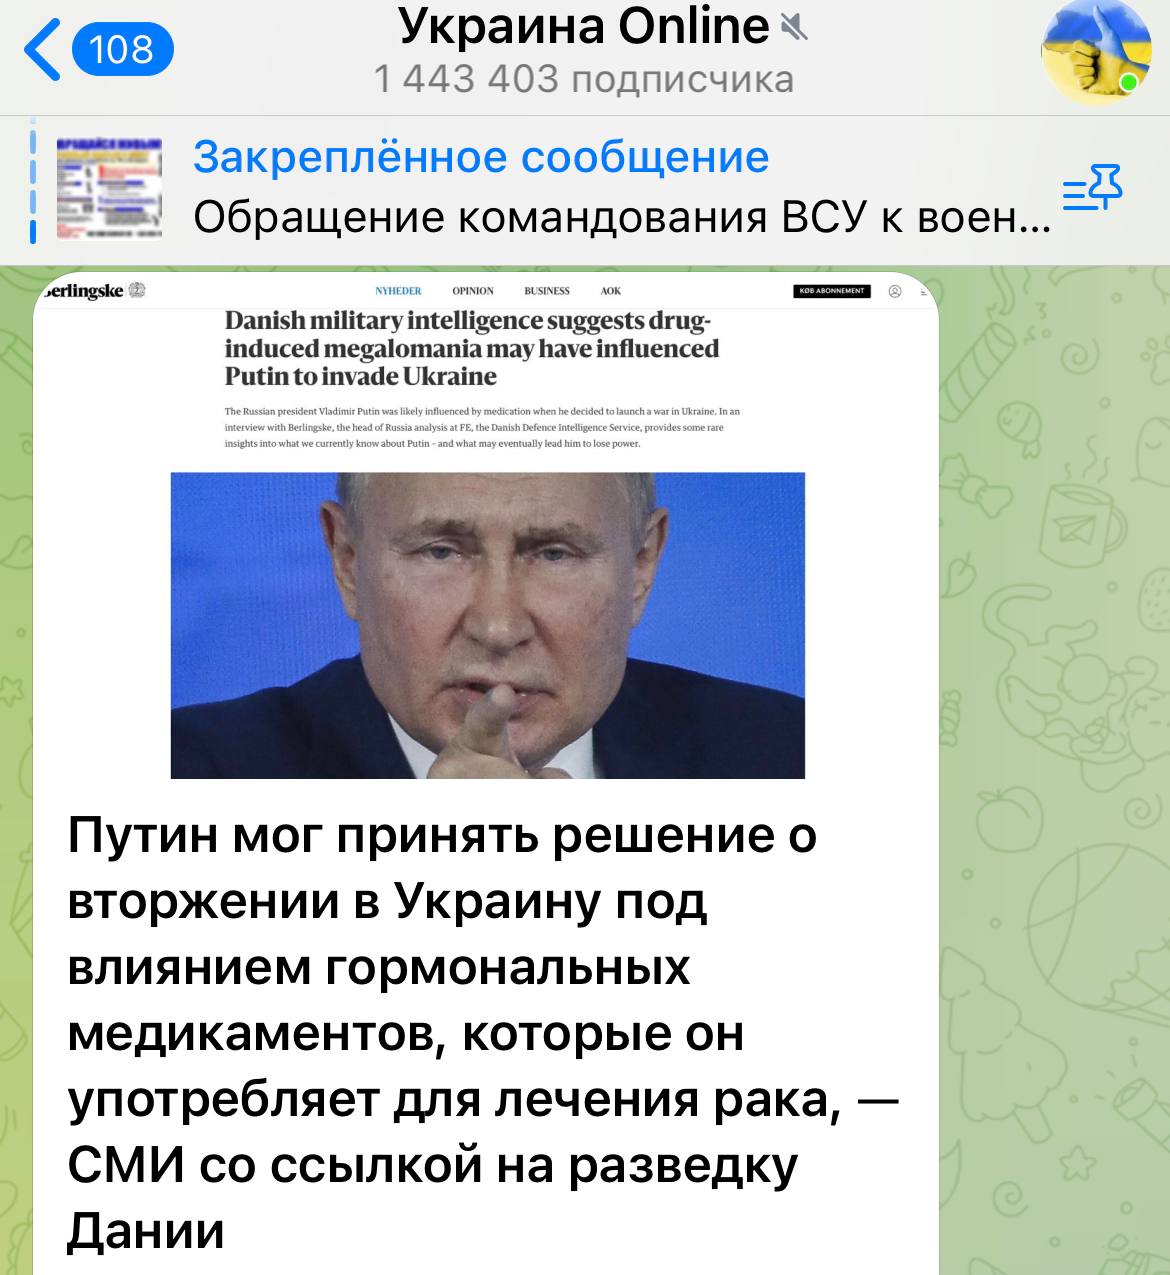 Труха телеграмм украина на русском языке смотреть онлайн бесплатно фото 94